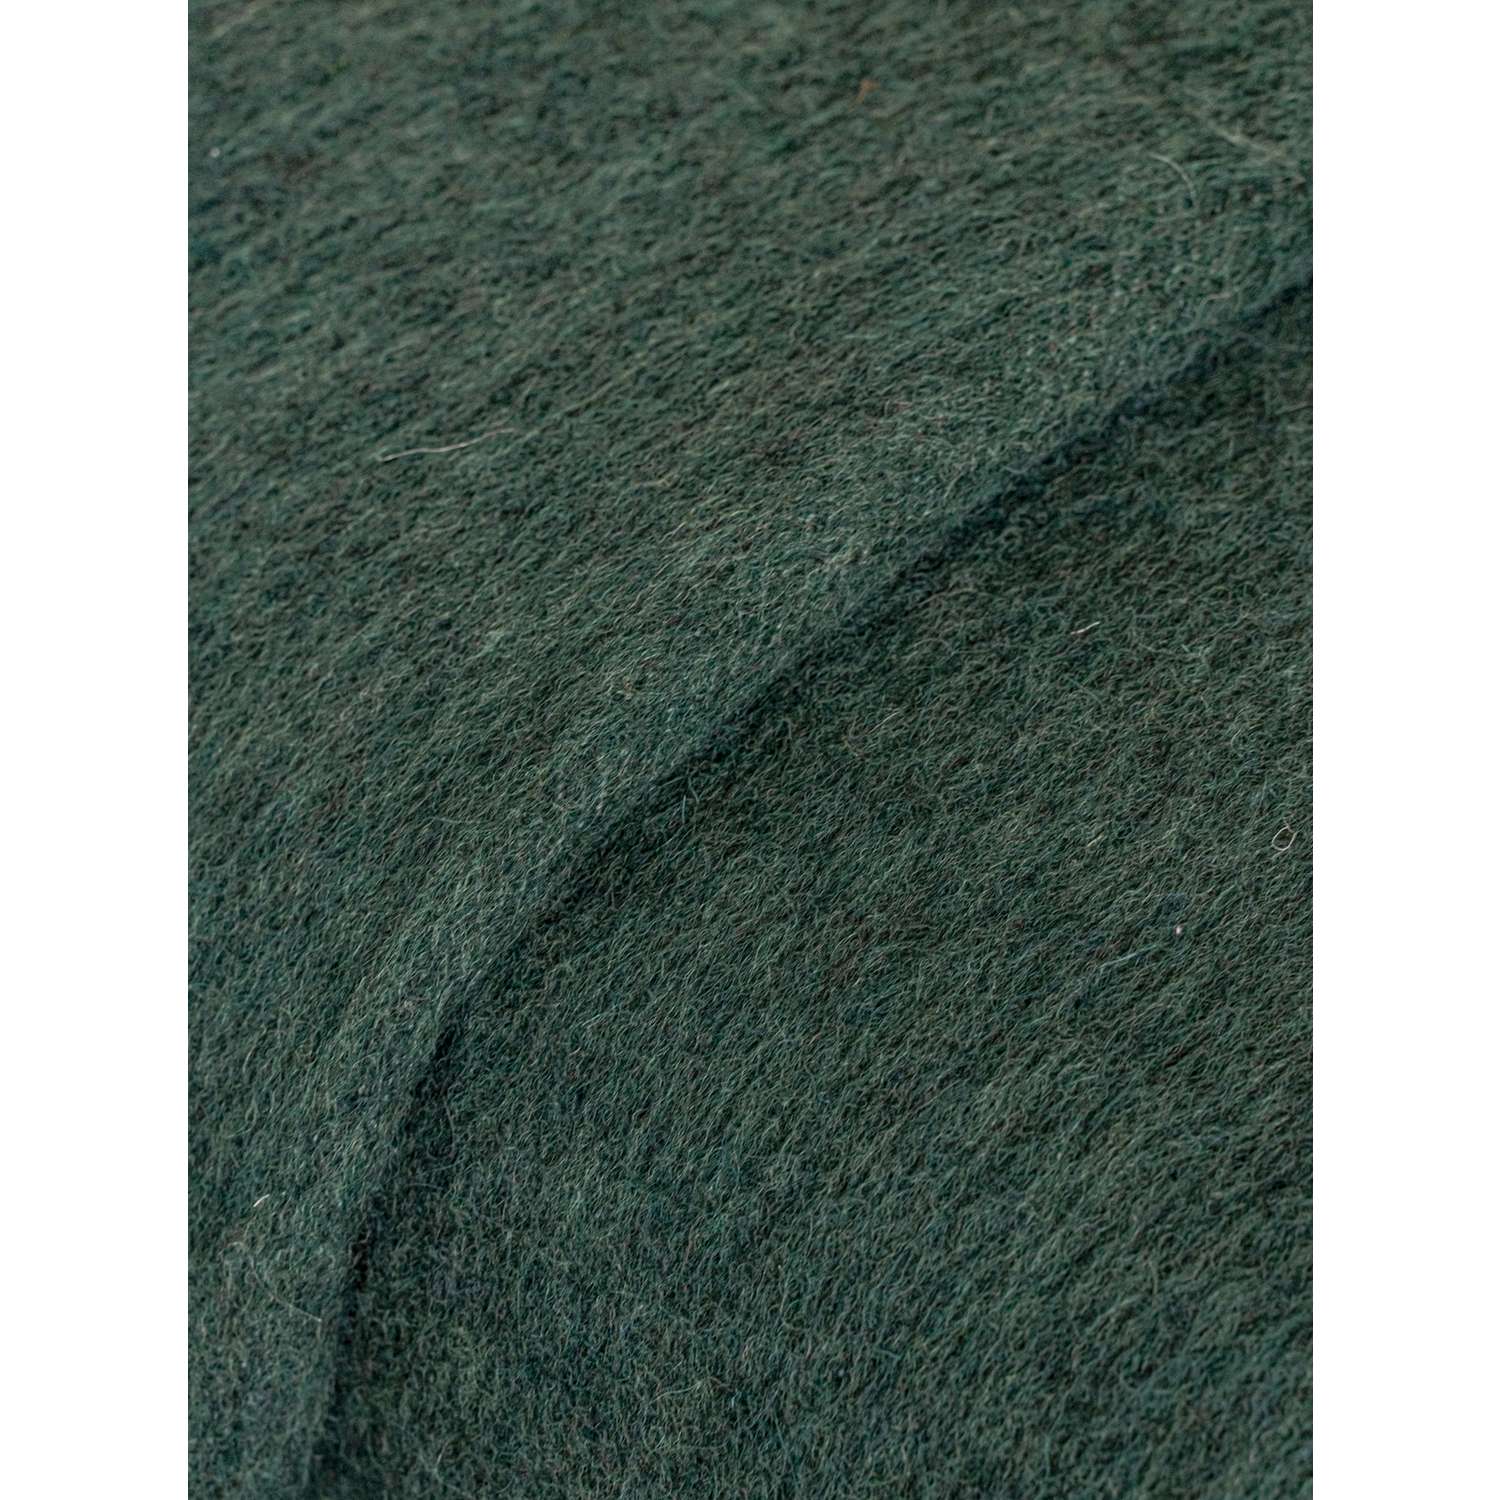 Одеяло полушерстяное детское Суконная фабрика г. Шуя 100х140 рисунок однотонный зеленый - фото 3